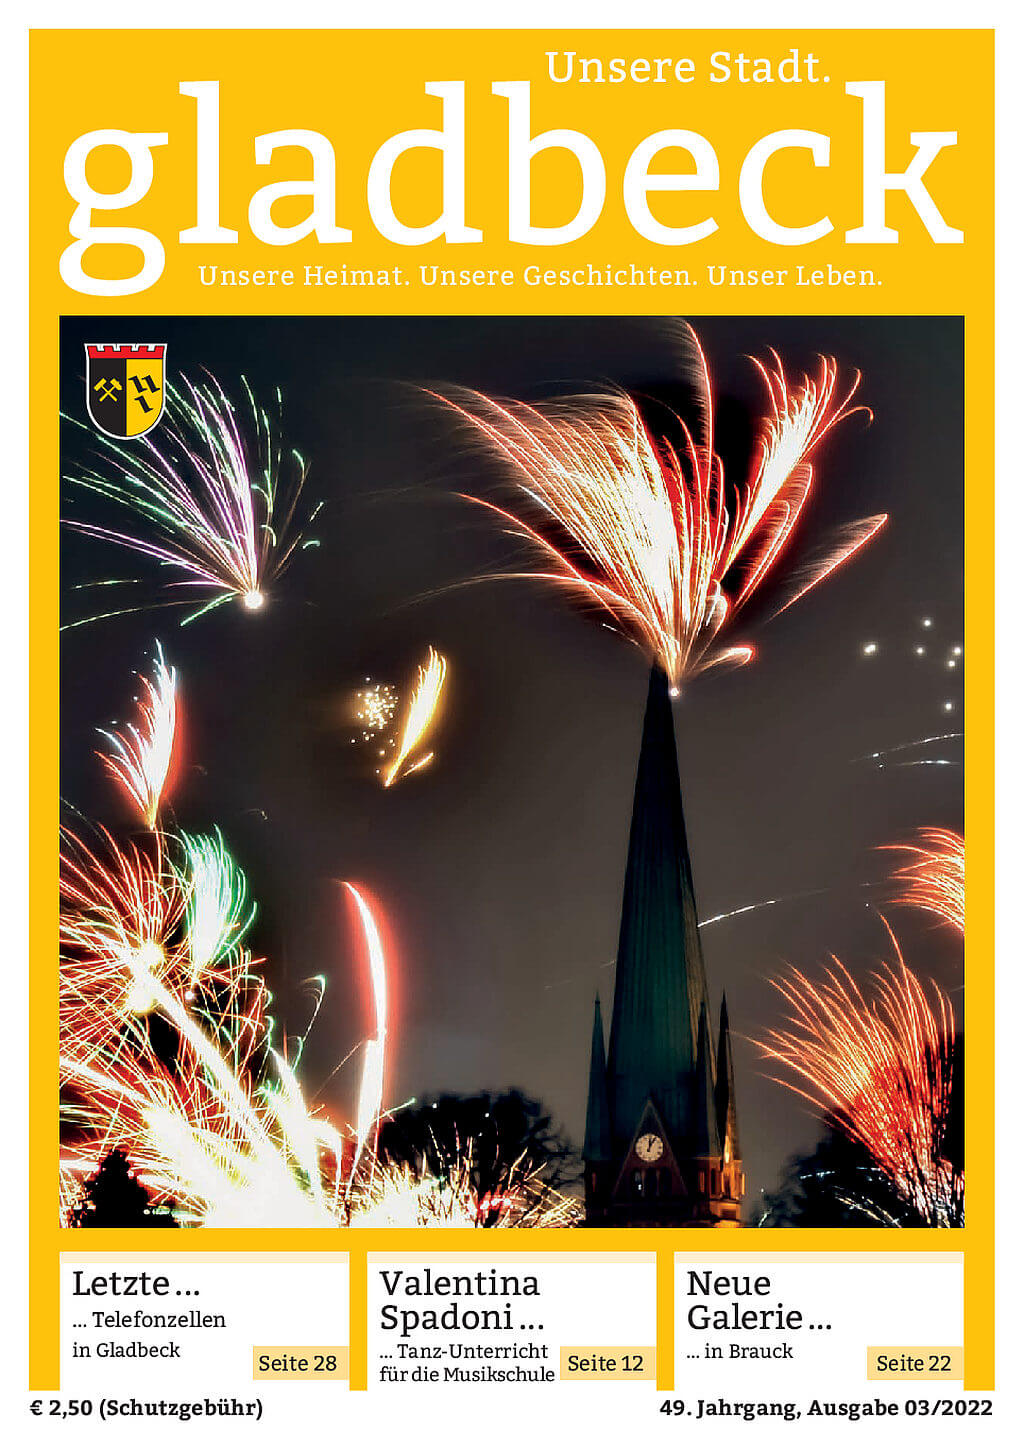 Zeitschrift Gladbeck unsere Stadt